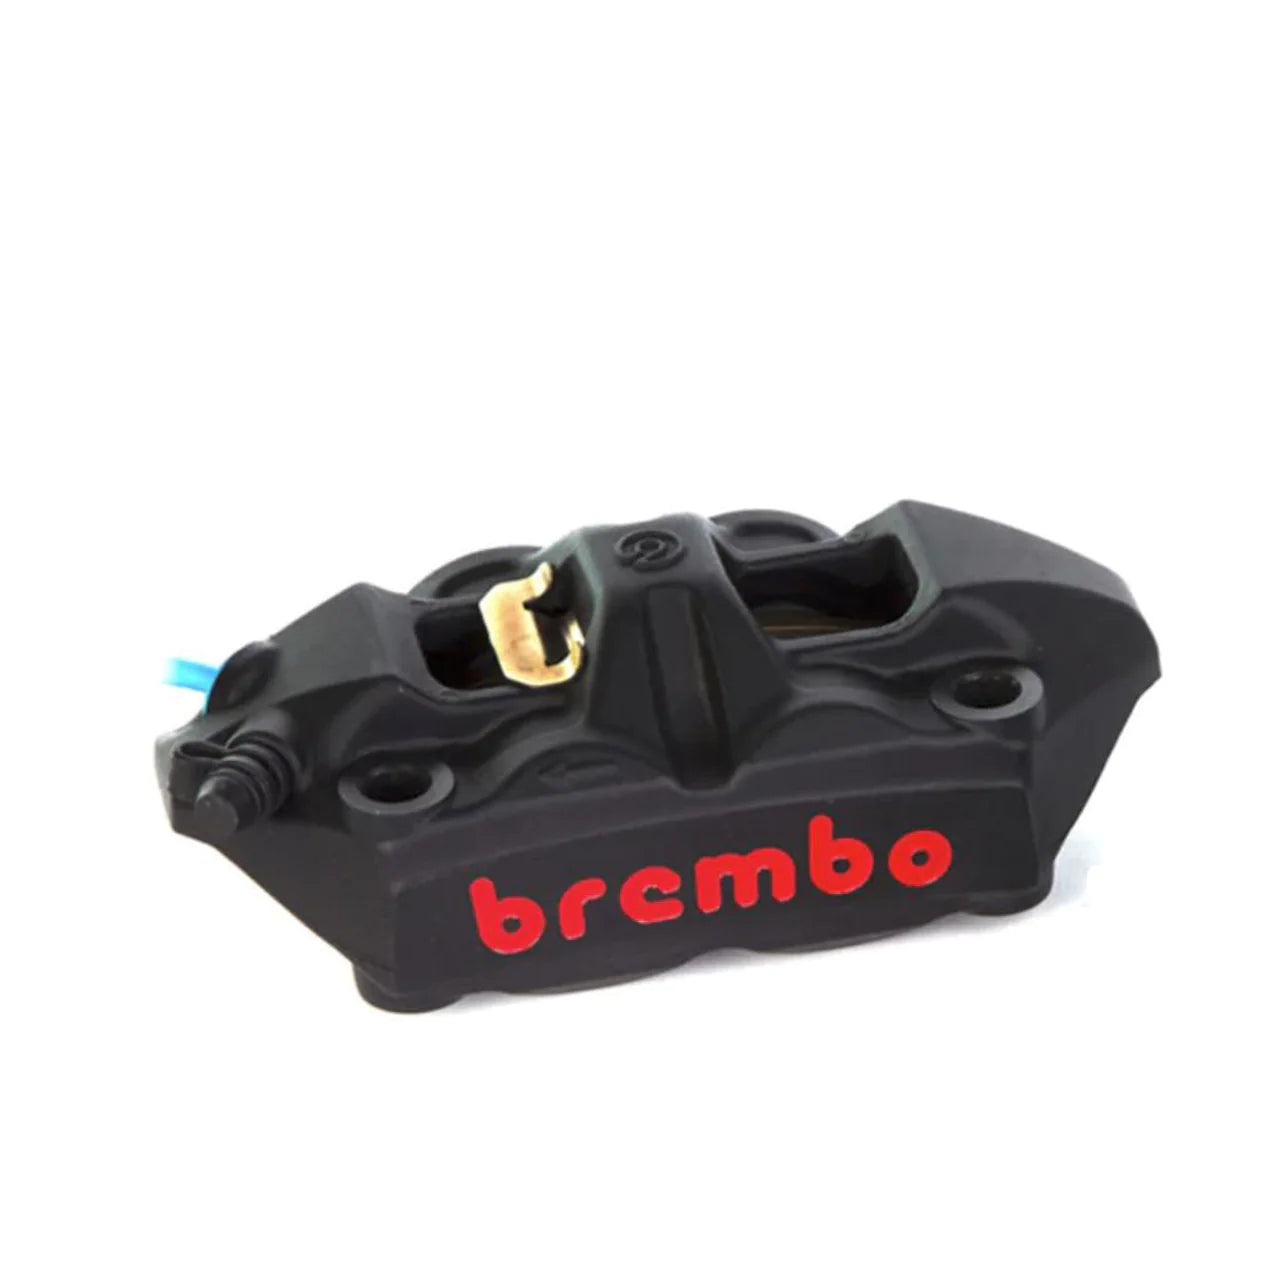 BREMBO 108MM M4 CAST MONOBLOC CALIPER BLACK/RED